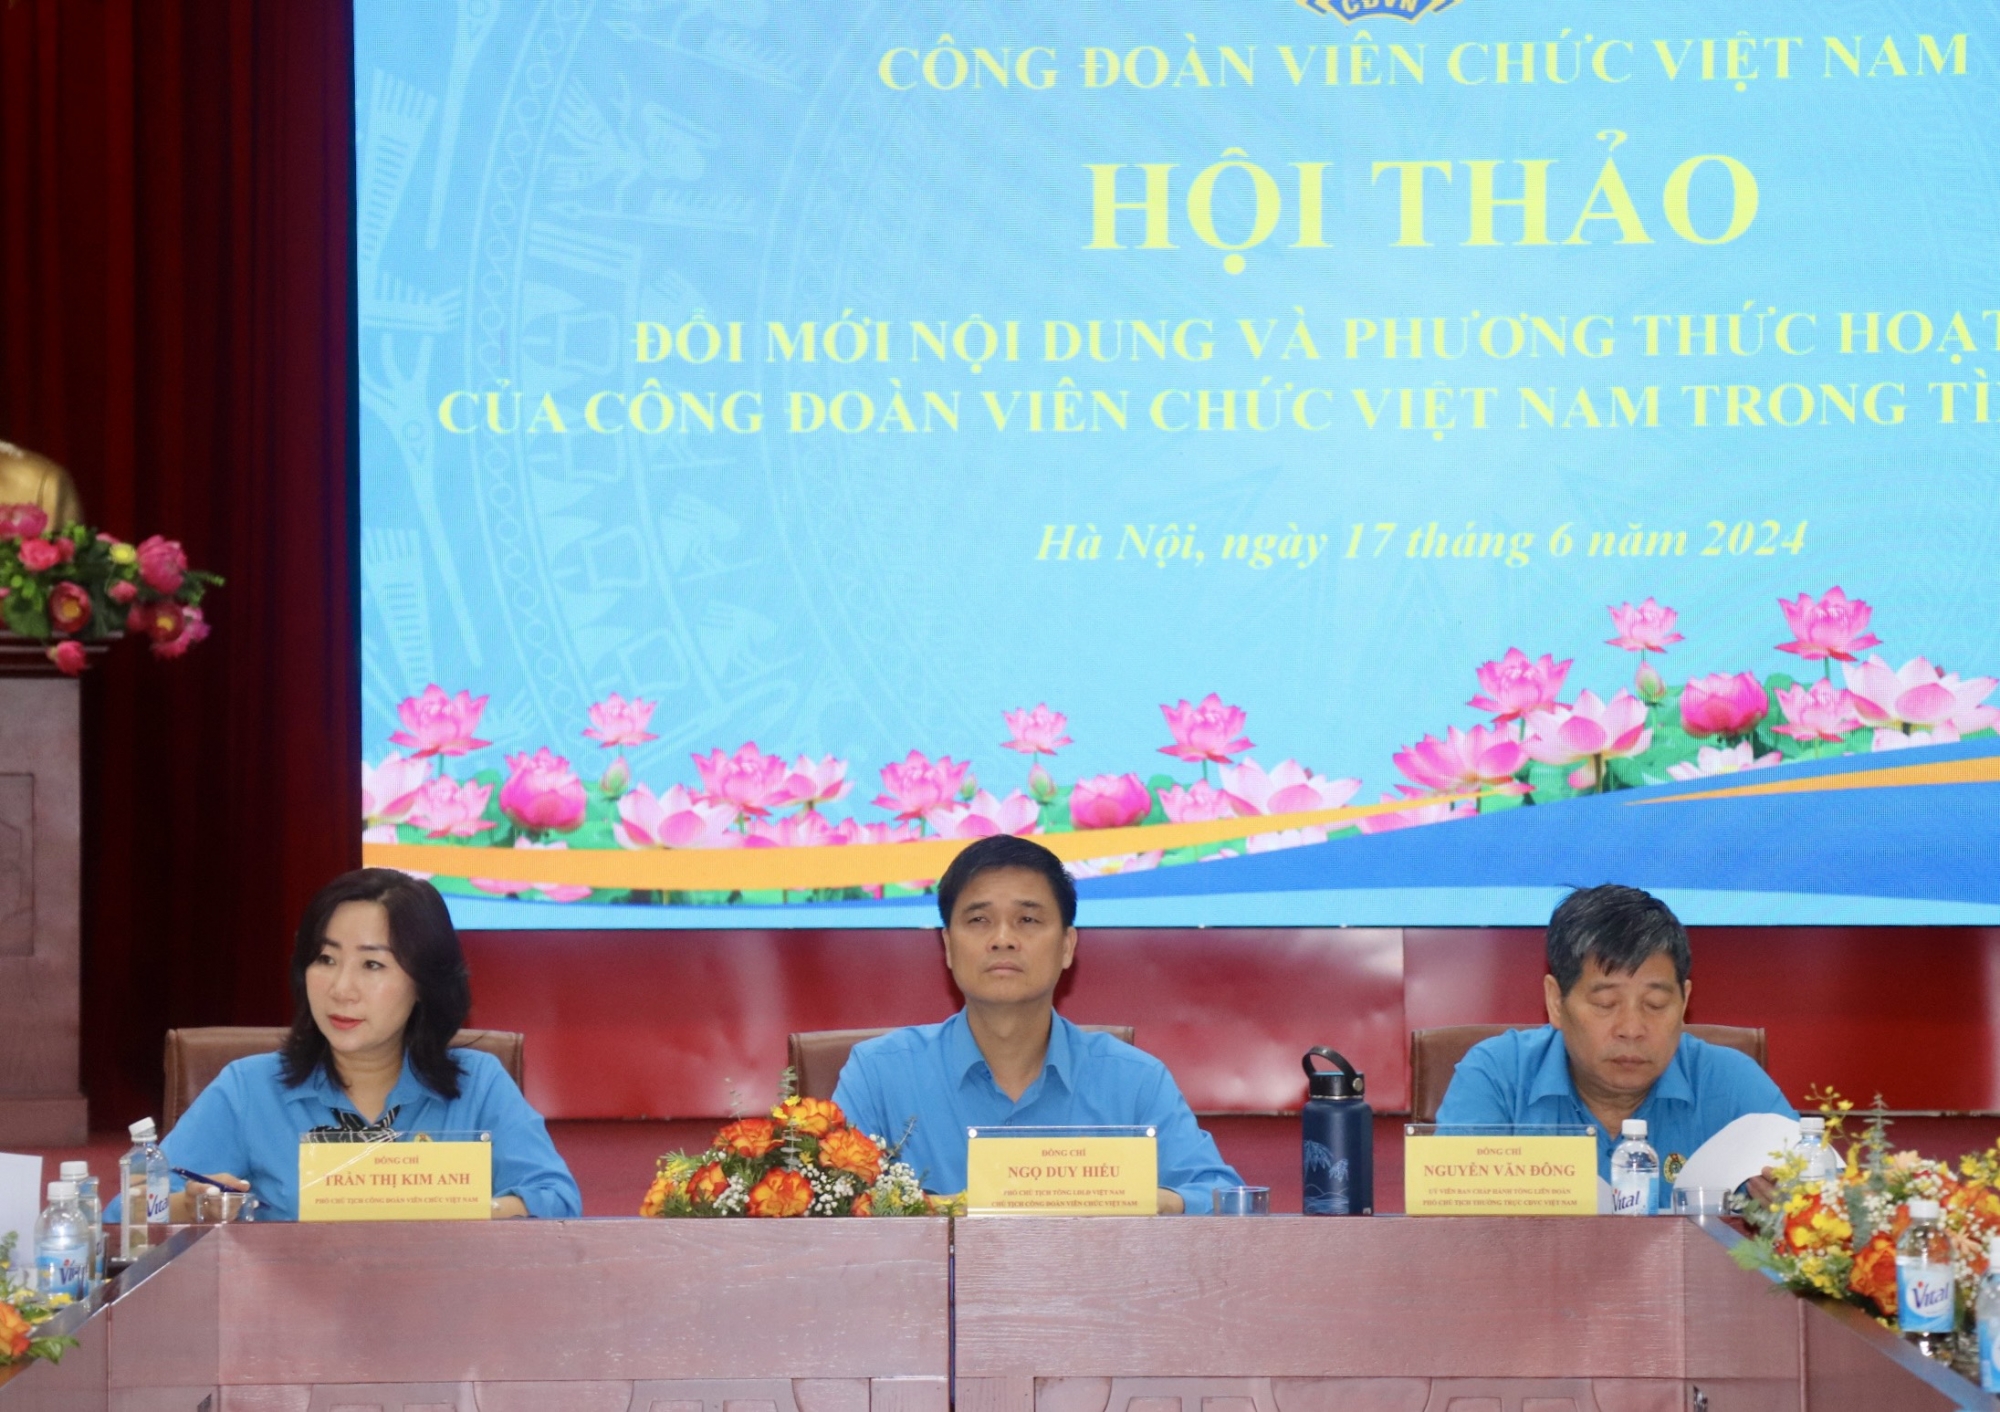 Đổi mới nội dung và phương thức hoạt động của Công đoàn Viên chức Việt Nam trong tình hình mới